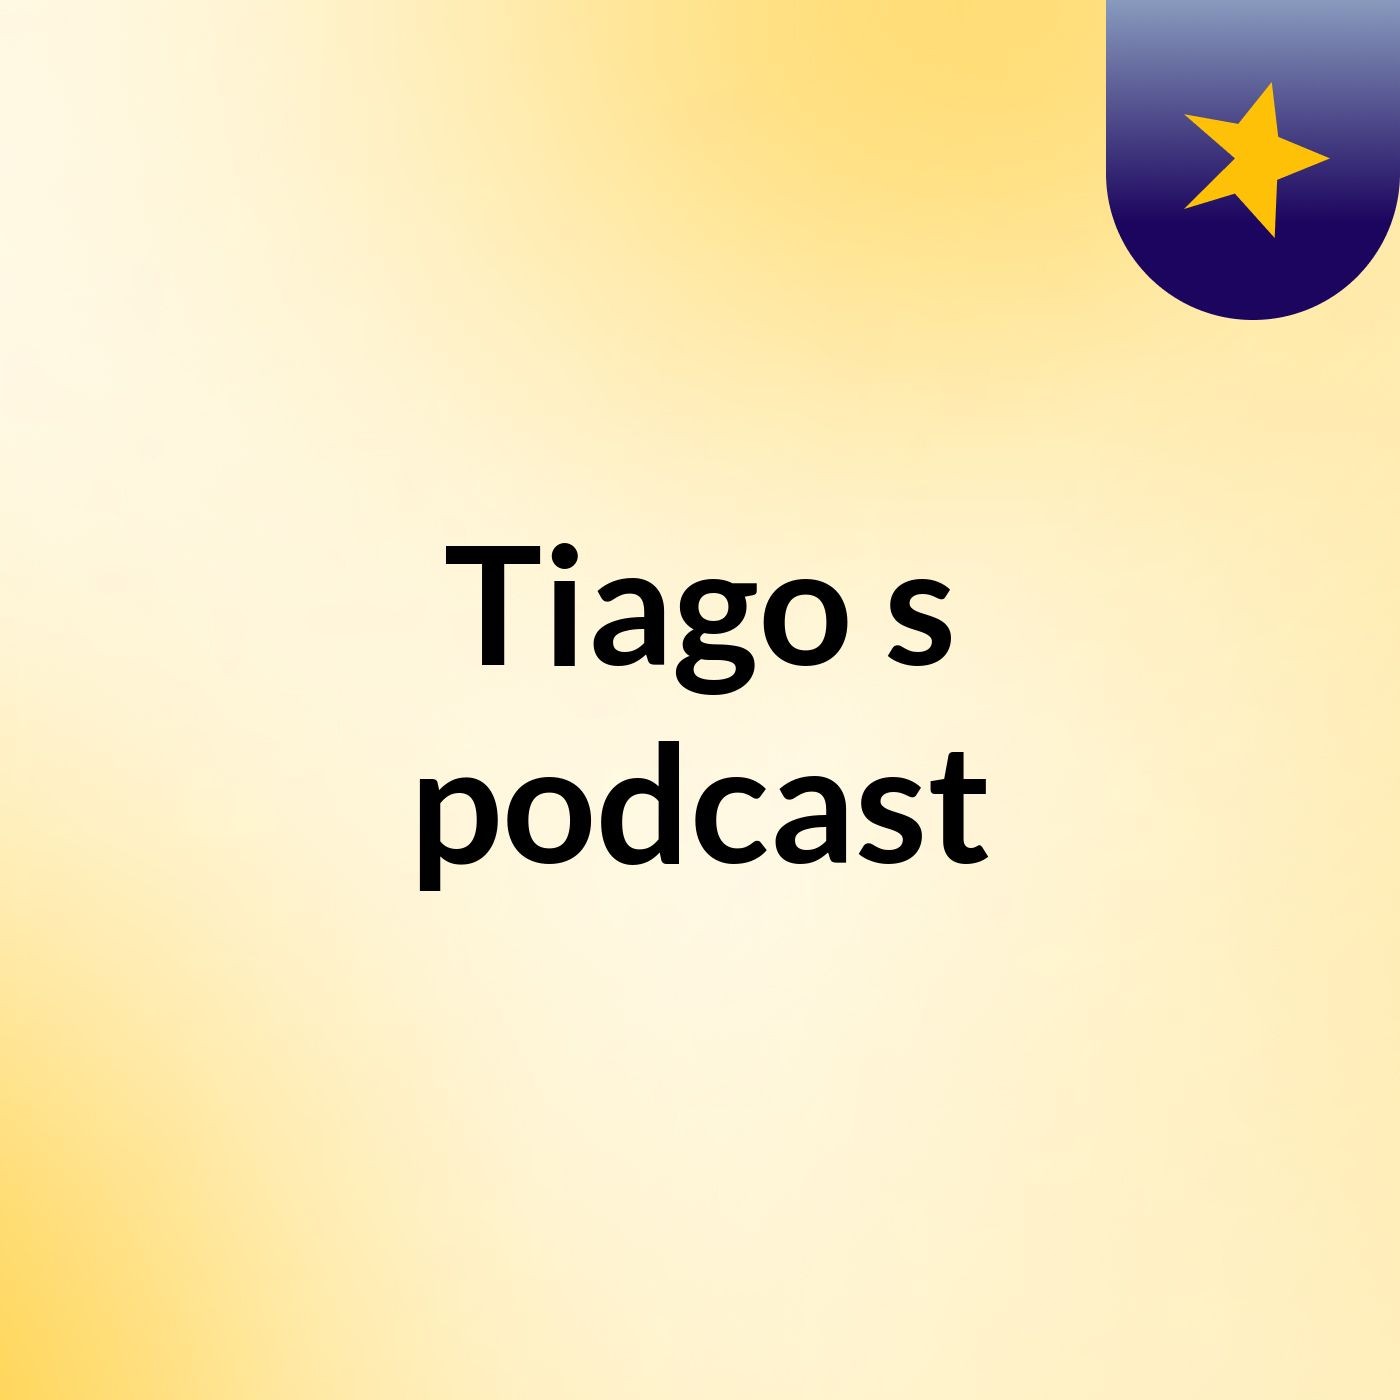 Tiago's podcast